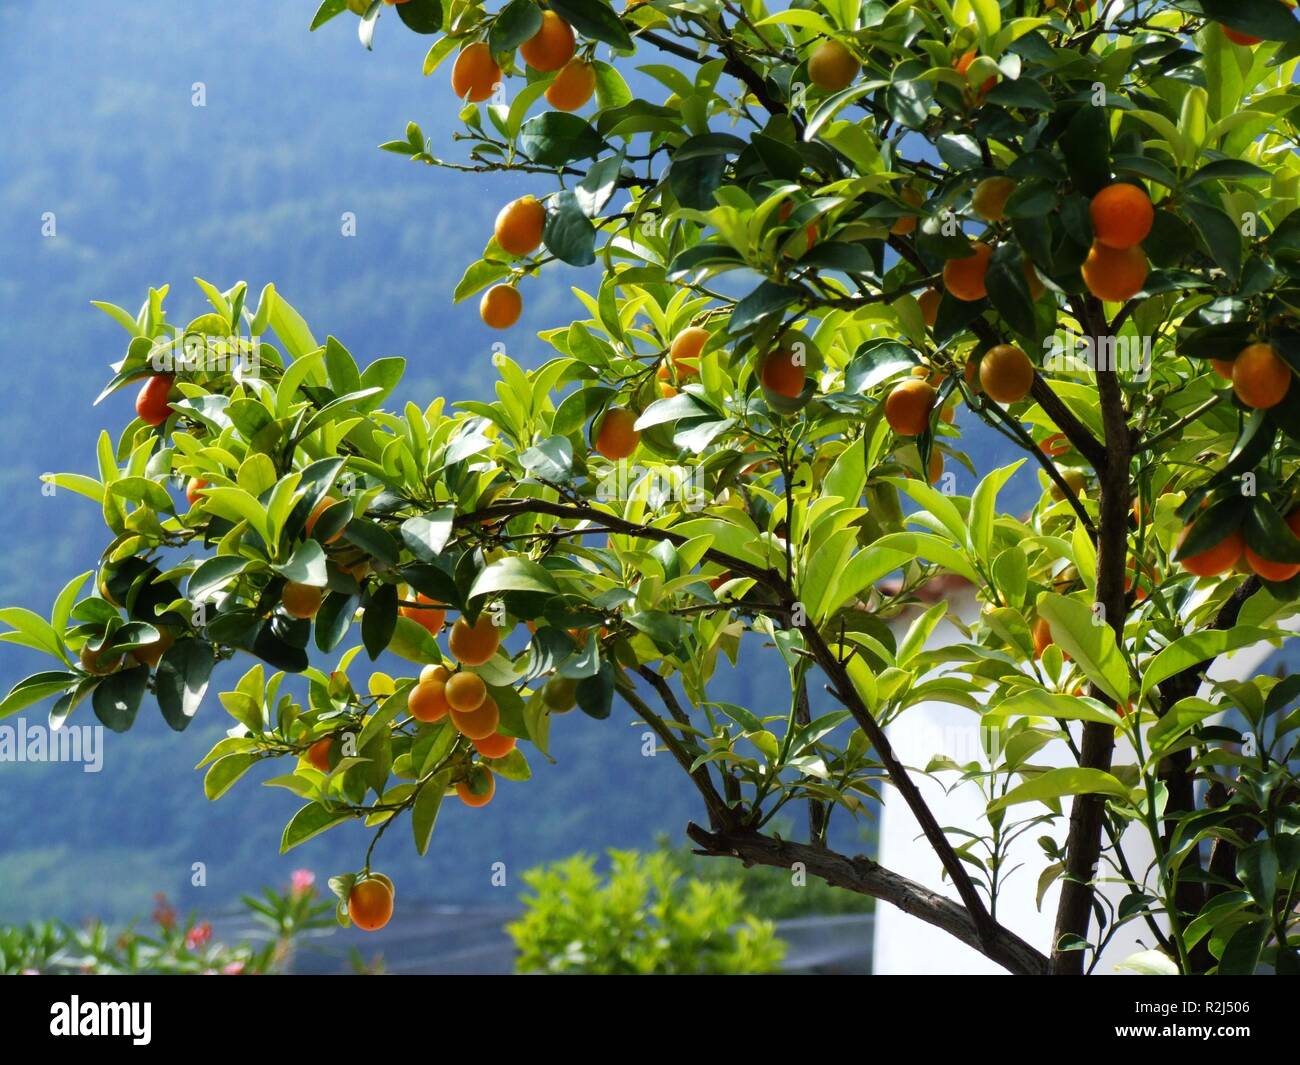 mandarin saplings Stock Photo